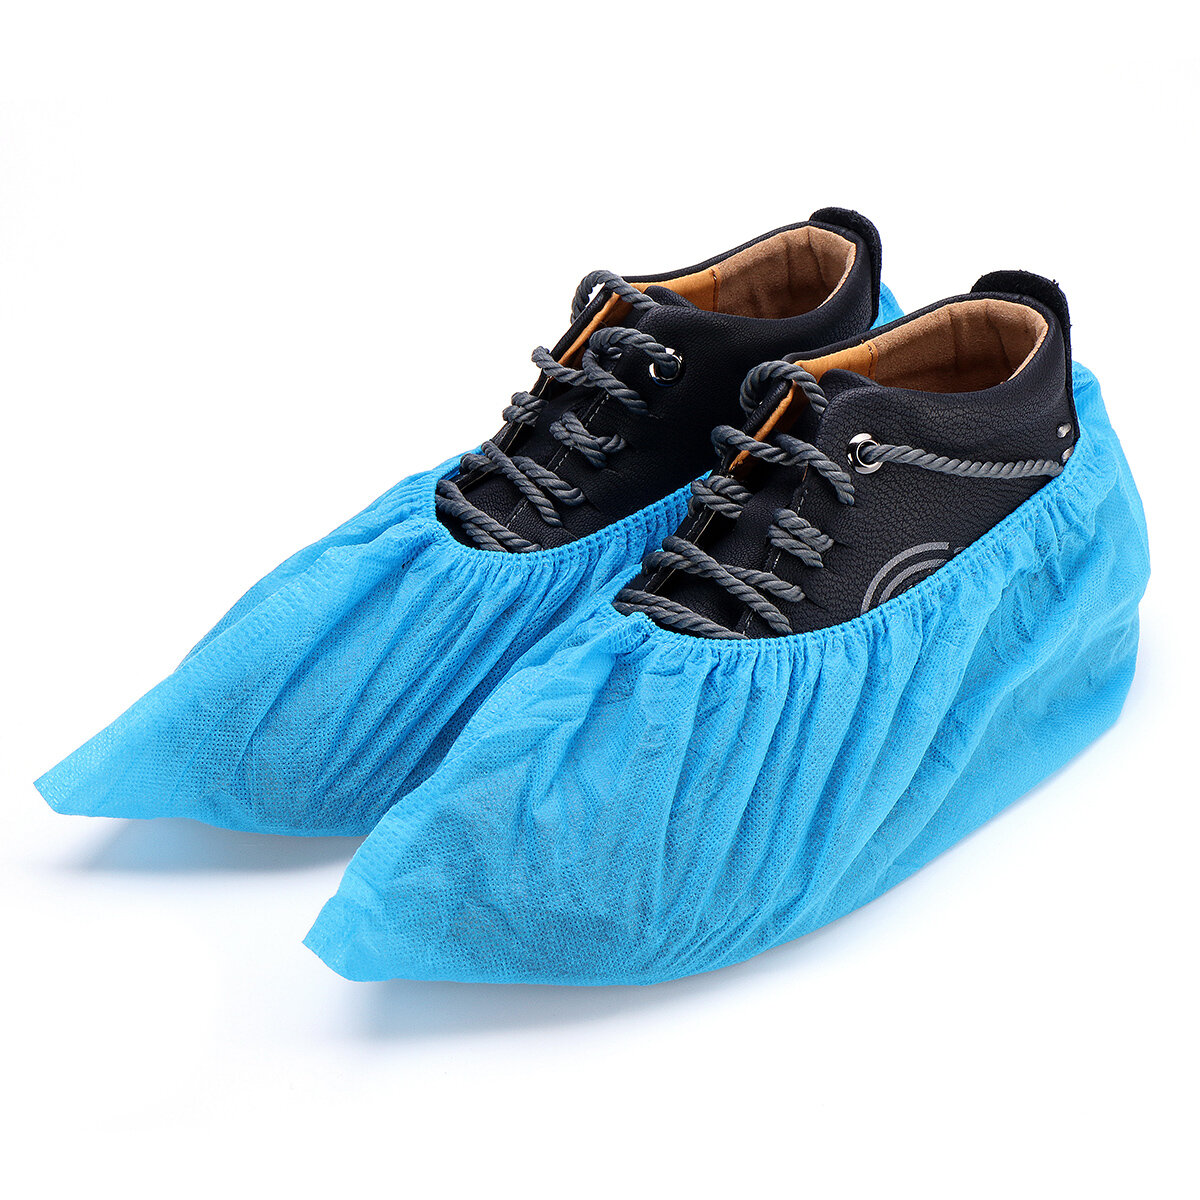 SGODDE 100 stks / partij Wegwerp Overschoenen Shoe Care Kits Plastic Regen Waterdichte Overschoenen Boot Covers Voor 34-46 Yard